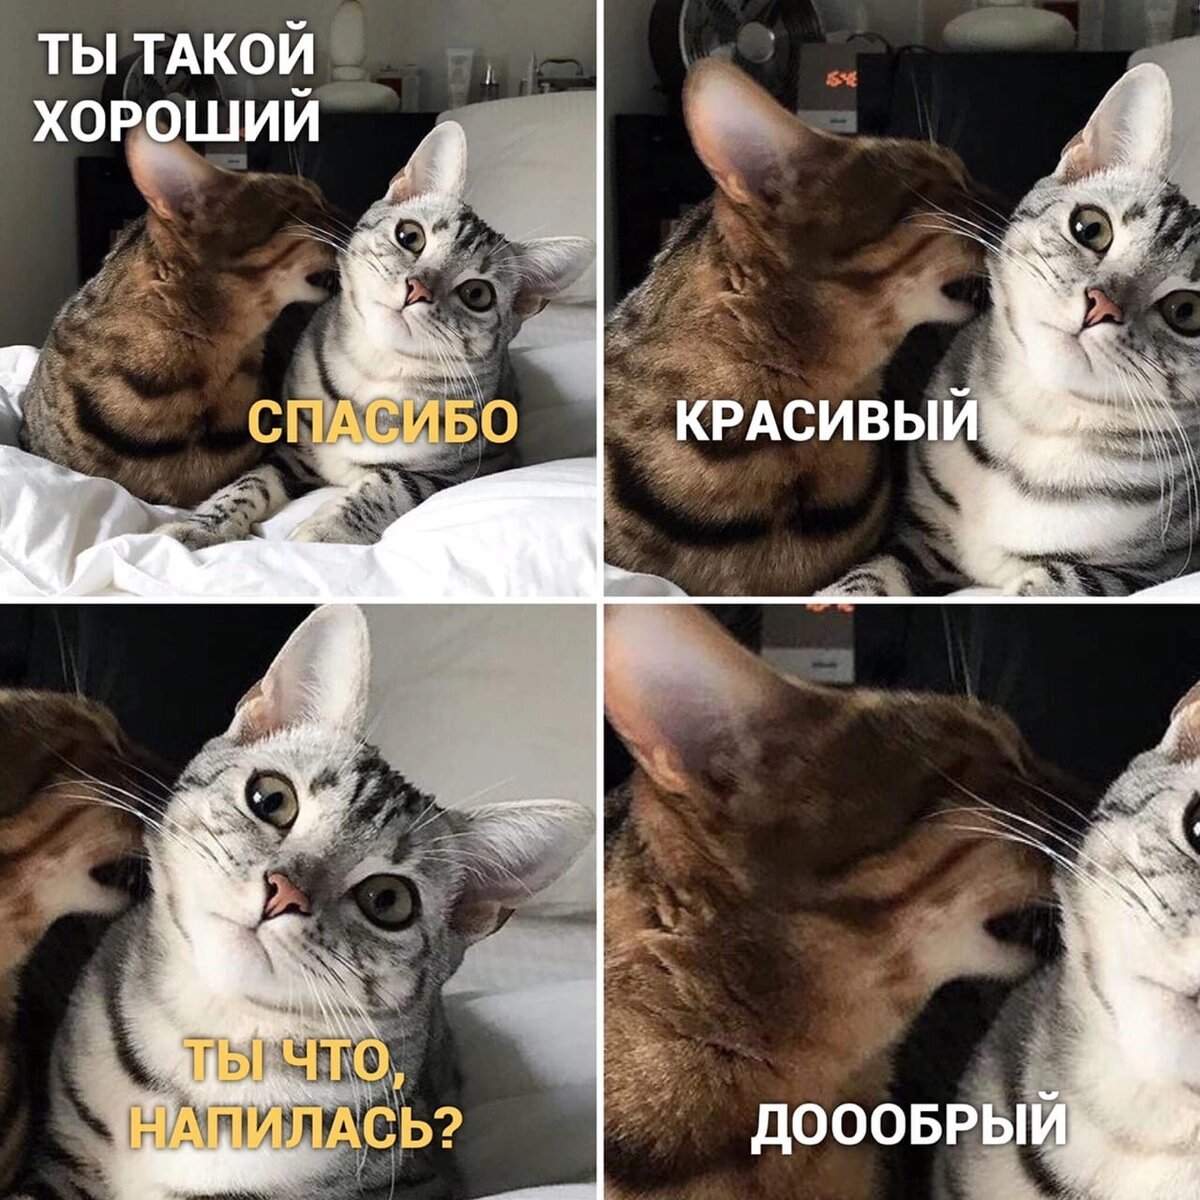 Смешные мемы про кошек — это отличный способ поднять настроение и поделиться забавными историями о наших пушистых друзьях. В этой статье мы рассмотрим некоторые популярные мемы.